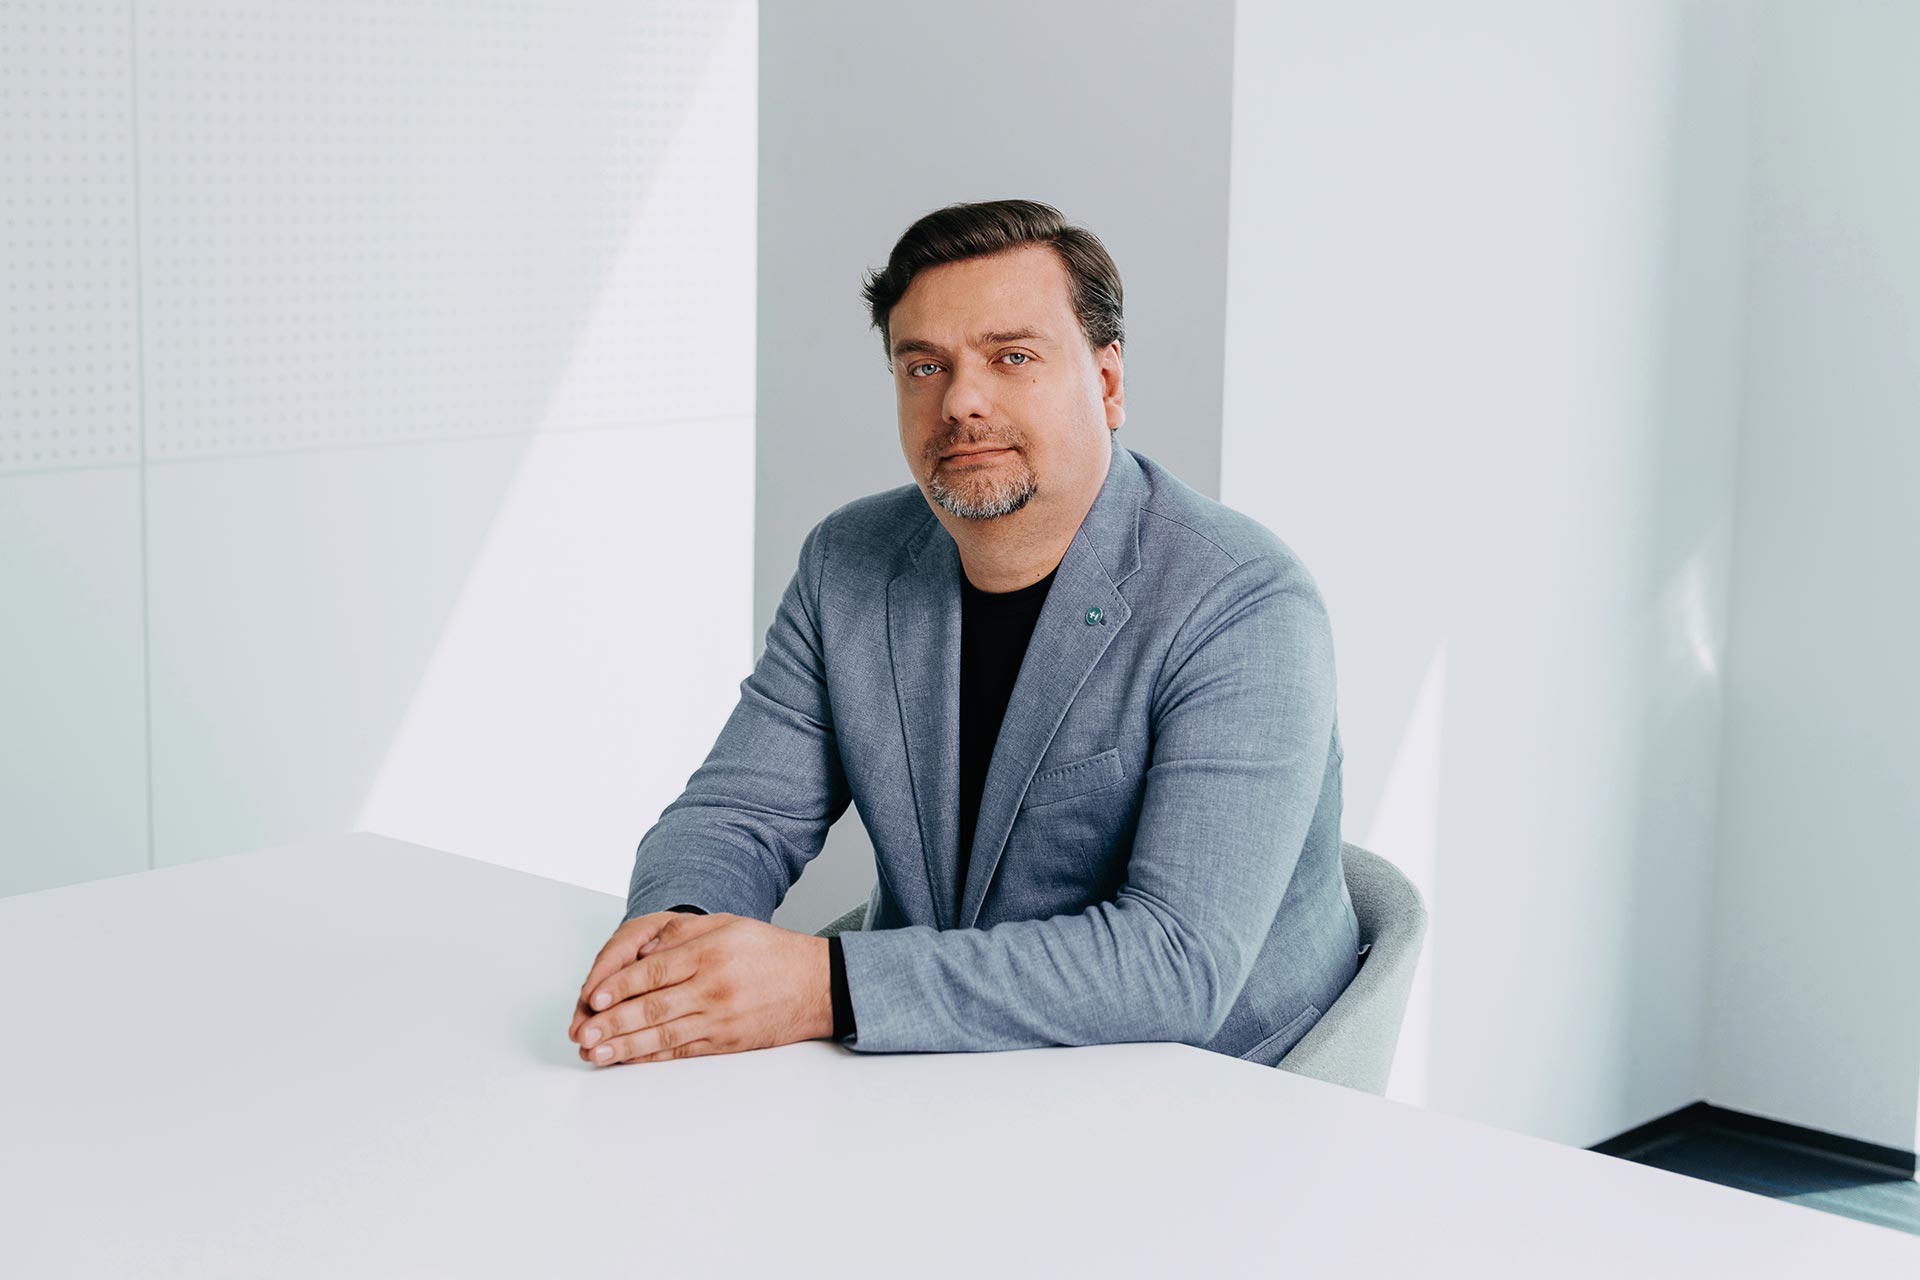 Дмитрий Красовский, директор компании «Т1 Цифровая Академия» (входит в IТ-холдинг Т1)